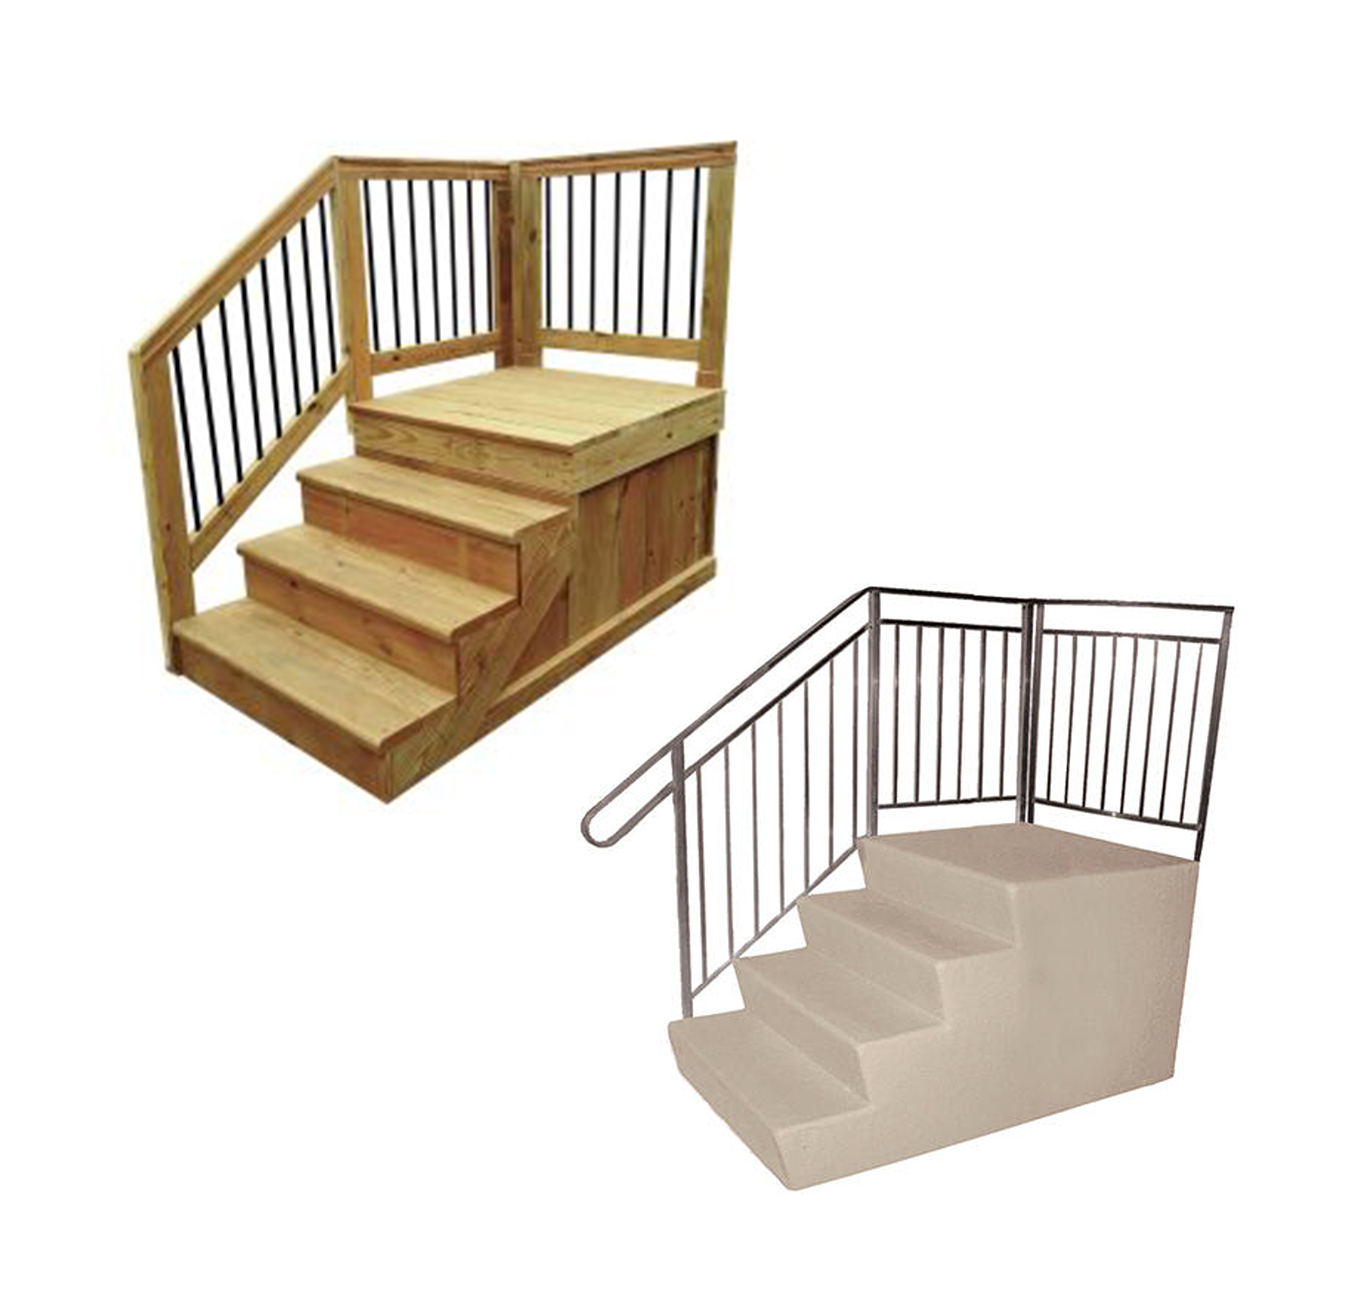 Fiberglass Coated Steps & Wood Deck Kits